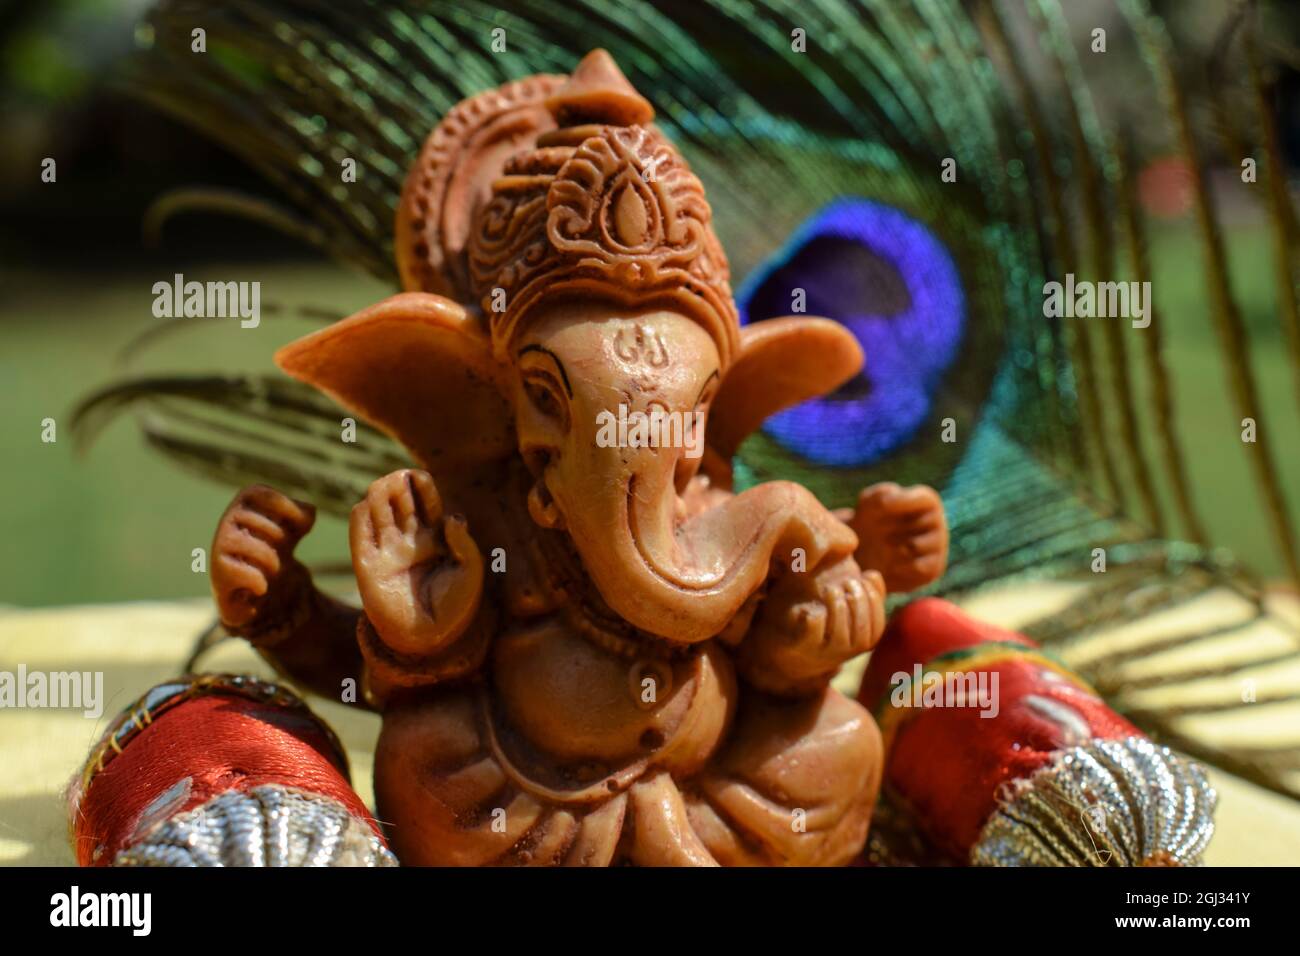 Bel signore Ganesha idol adorato durante il festival di Ganesh chaturthi con piume di pavone sullo sfondo. Ganpati seduto con cuscini e imbottiture Foto Stock